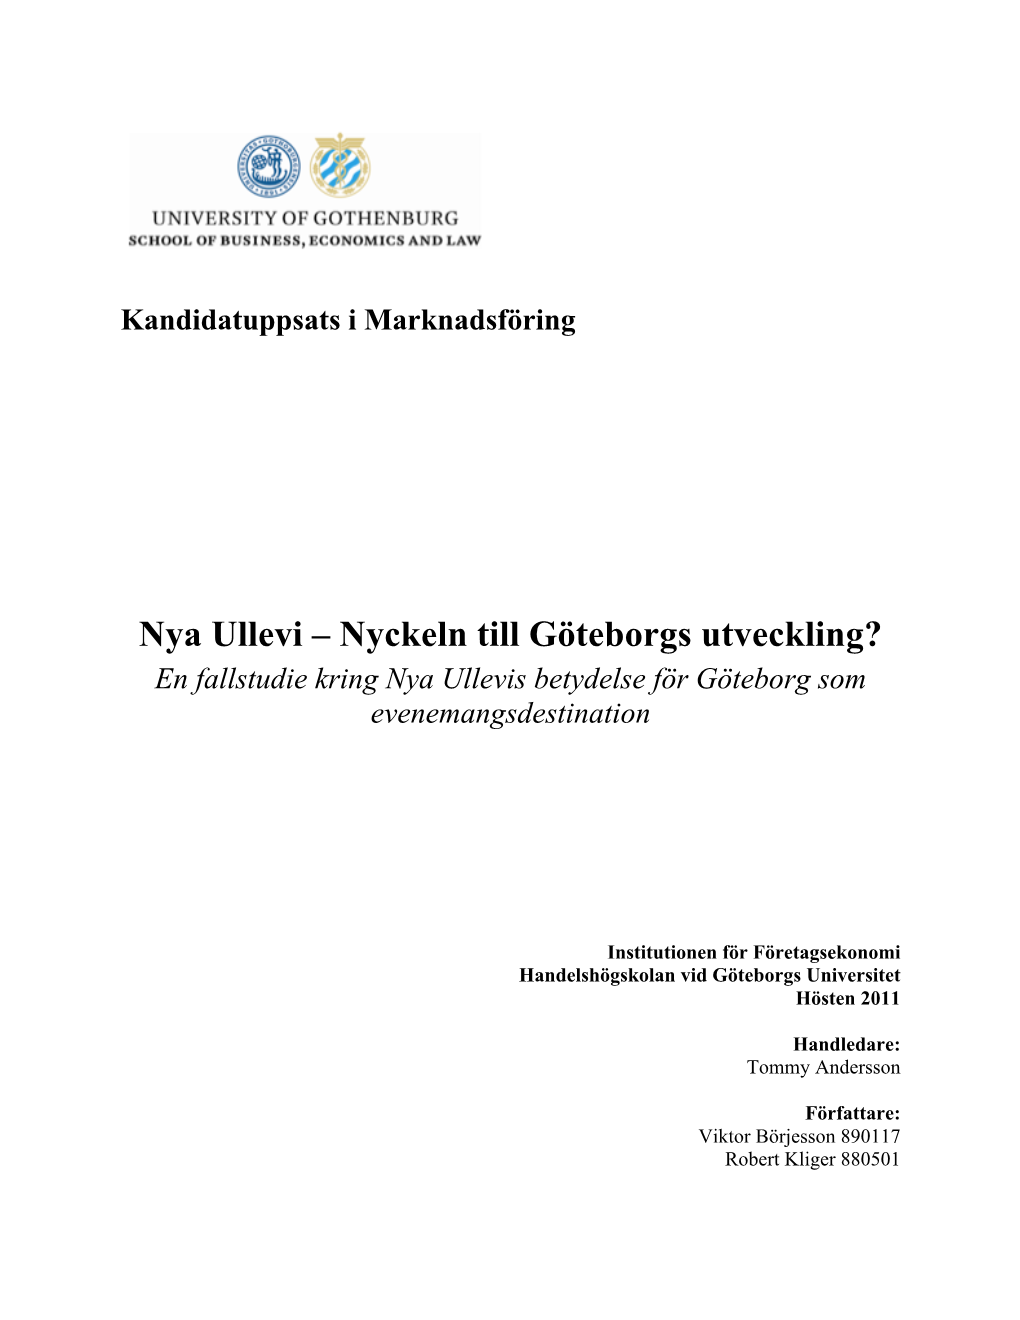 Nya Ullevi – Nyckeln Till Göteborgs Utveckling? En Fallstudie Kring Nya Ullevis Betydelse För Göteborg Som Evenemangsdestination